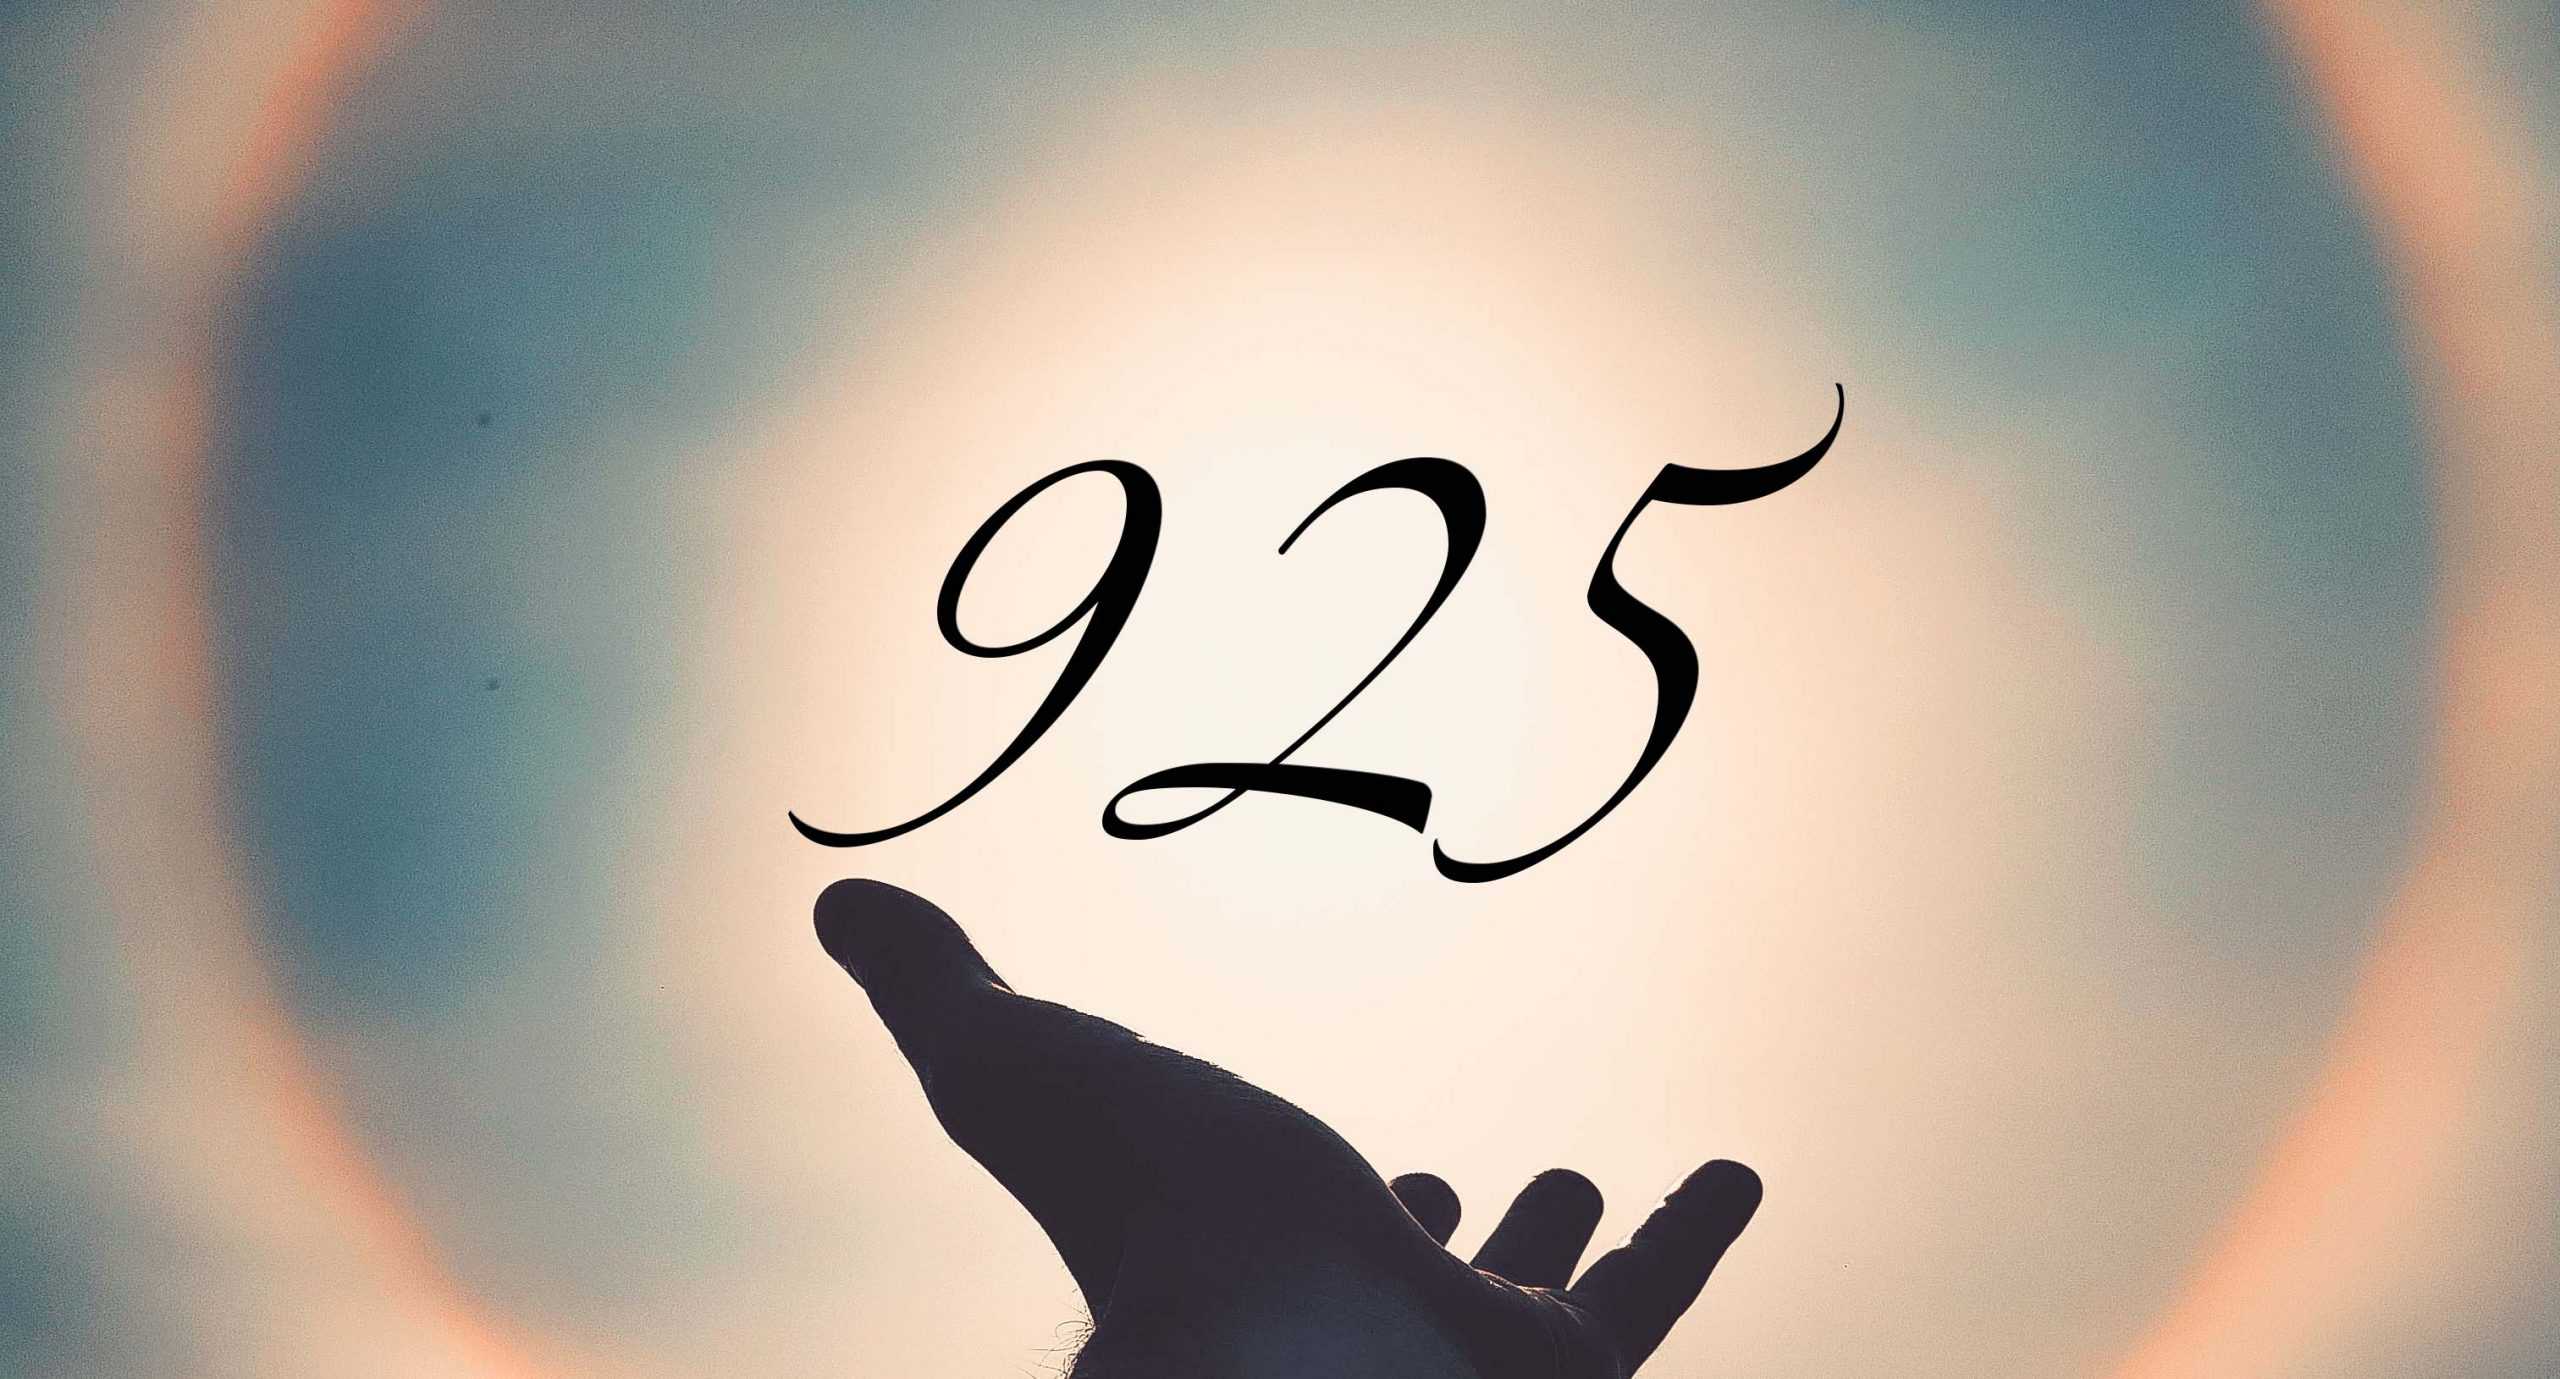 Signification du nombre 925